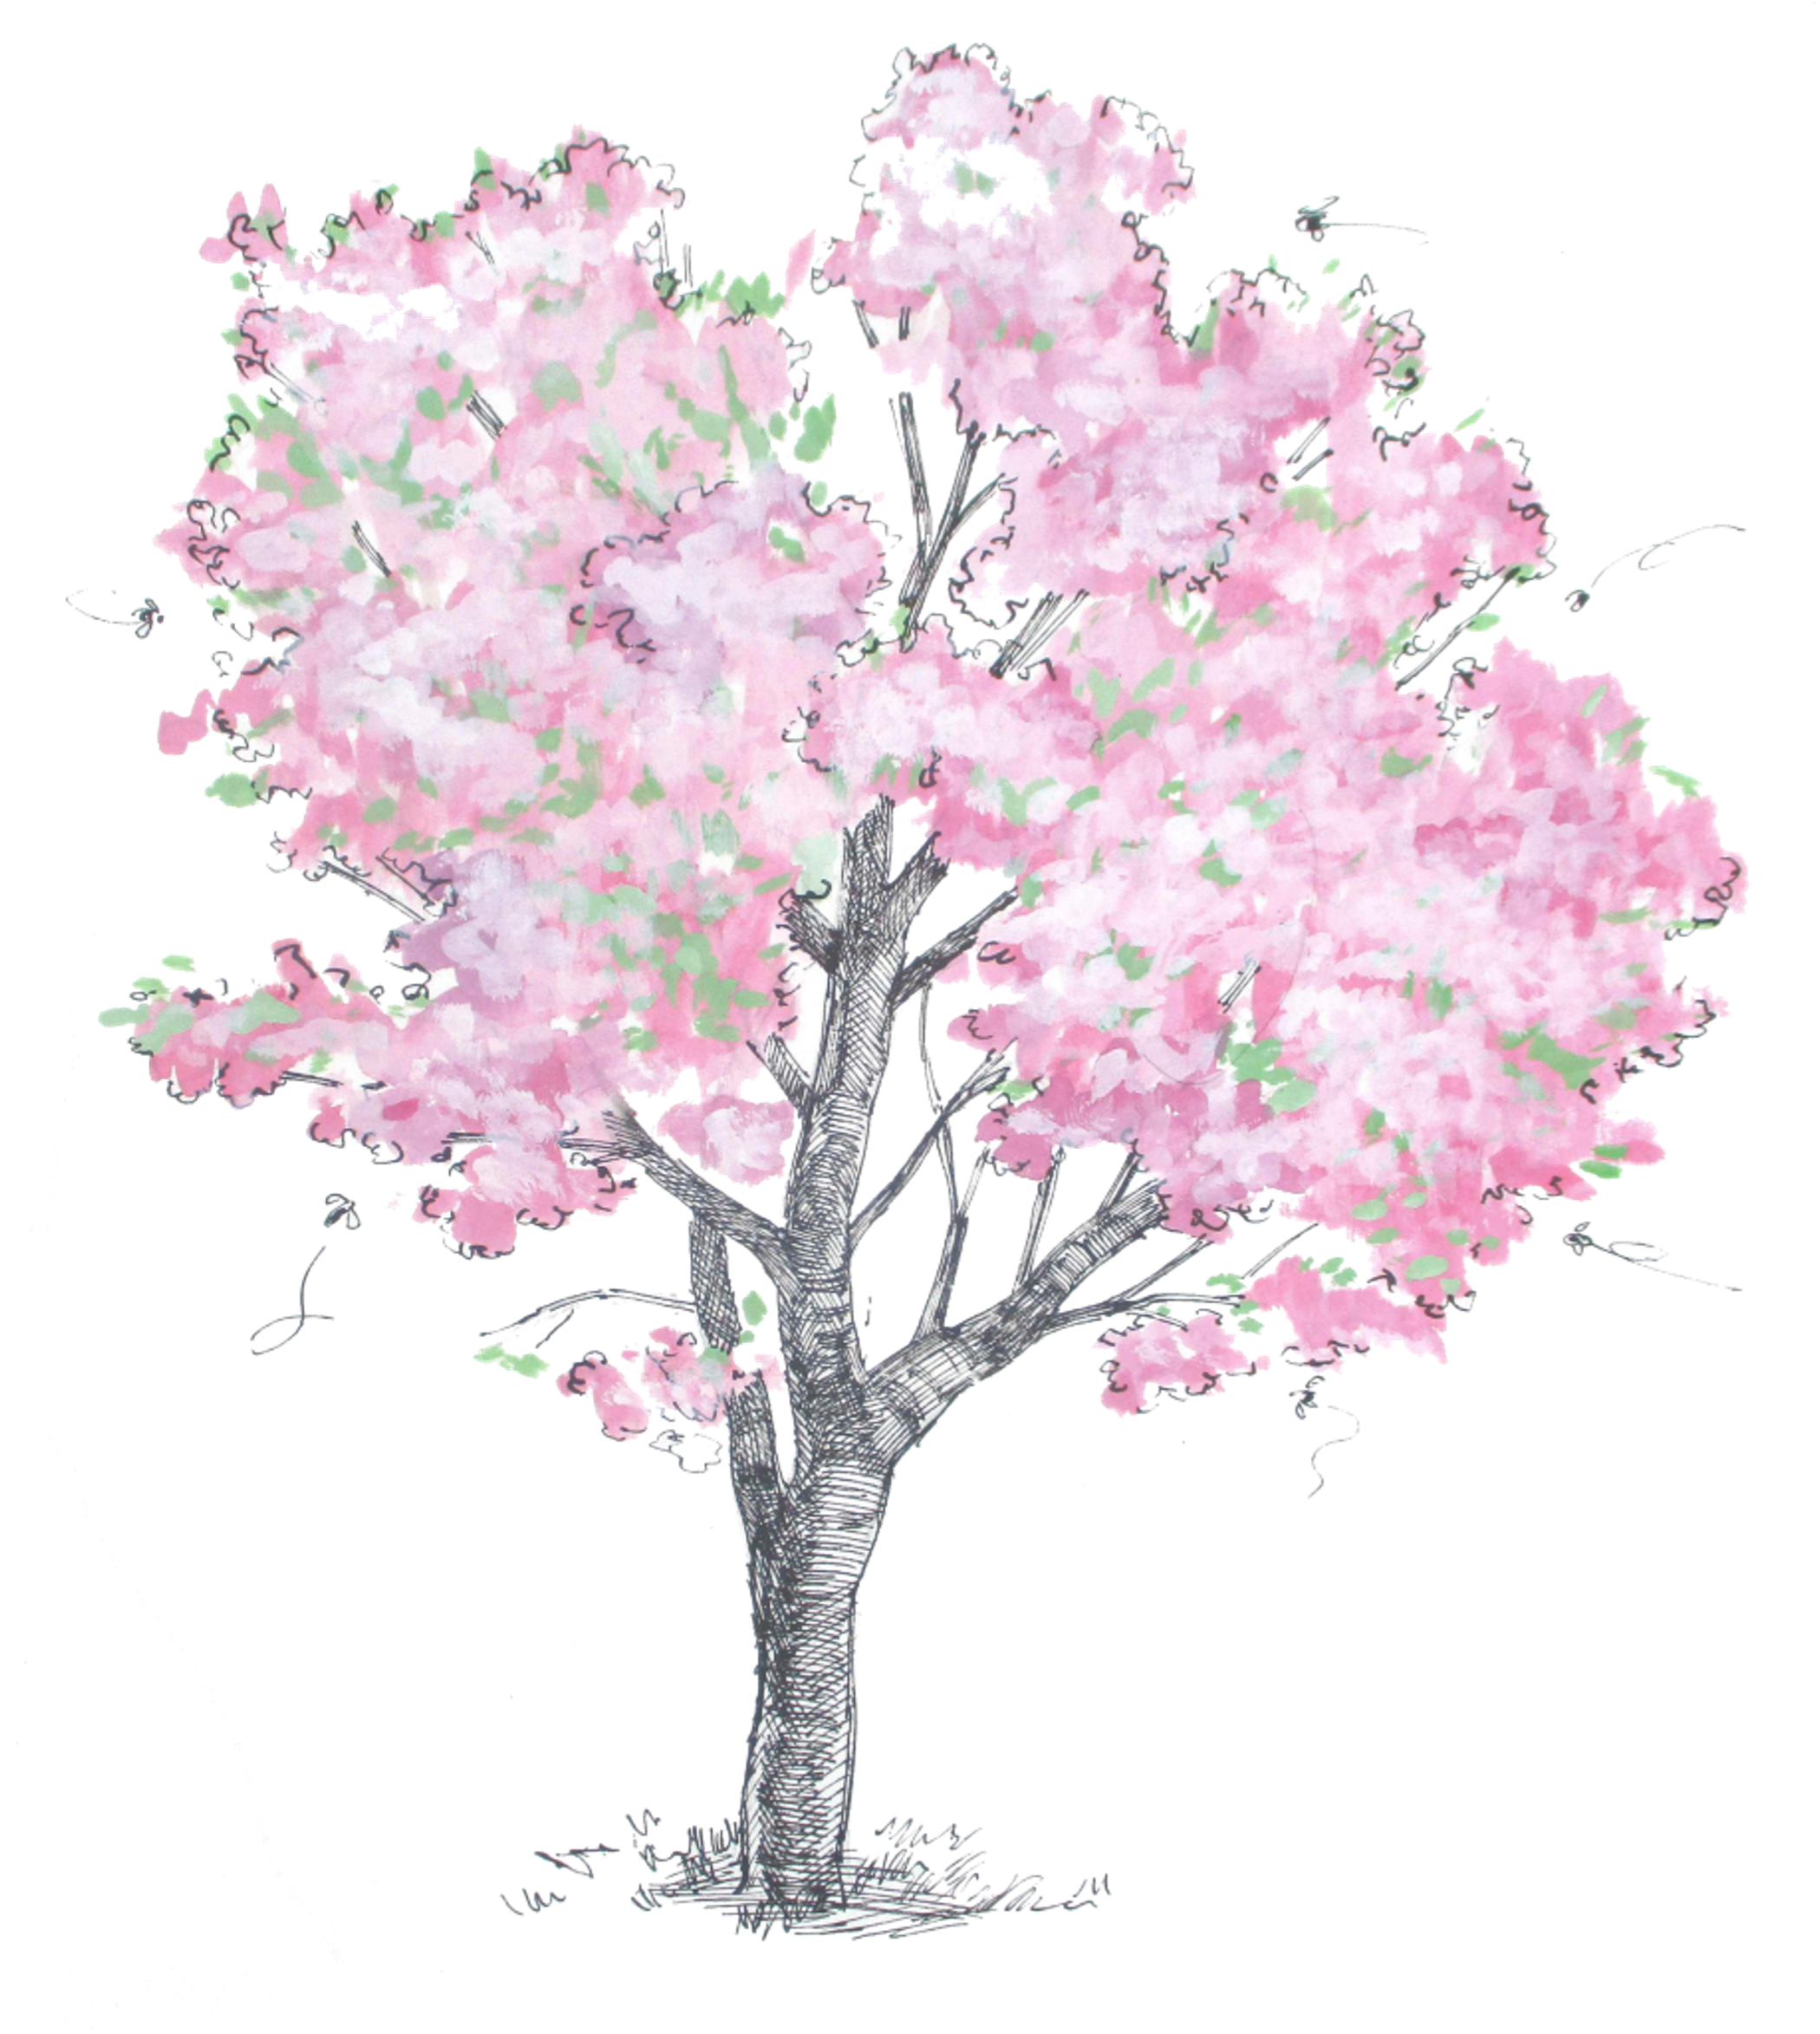 HOM_Illustration_Cherries_Tree